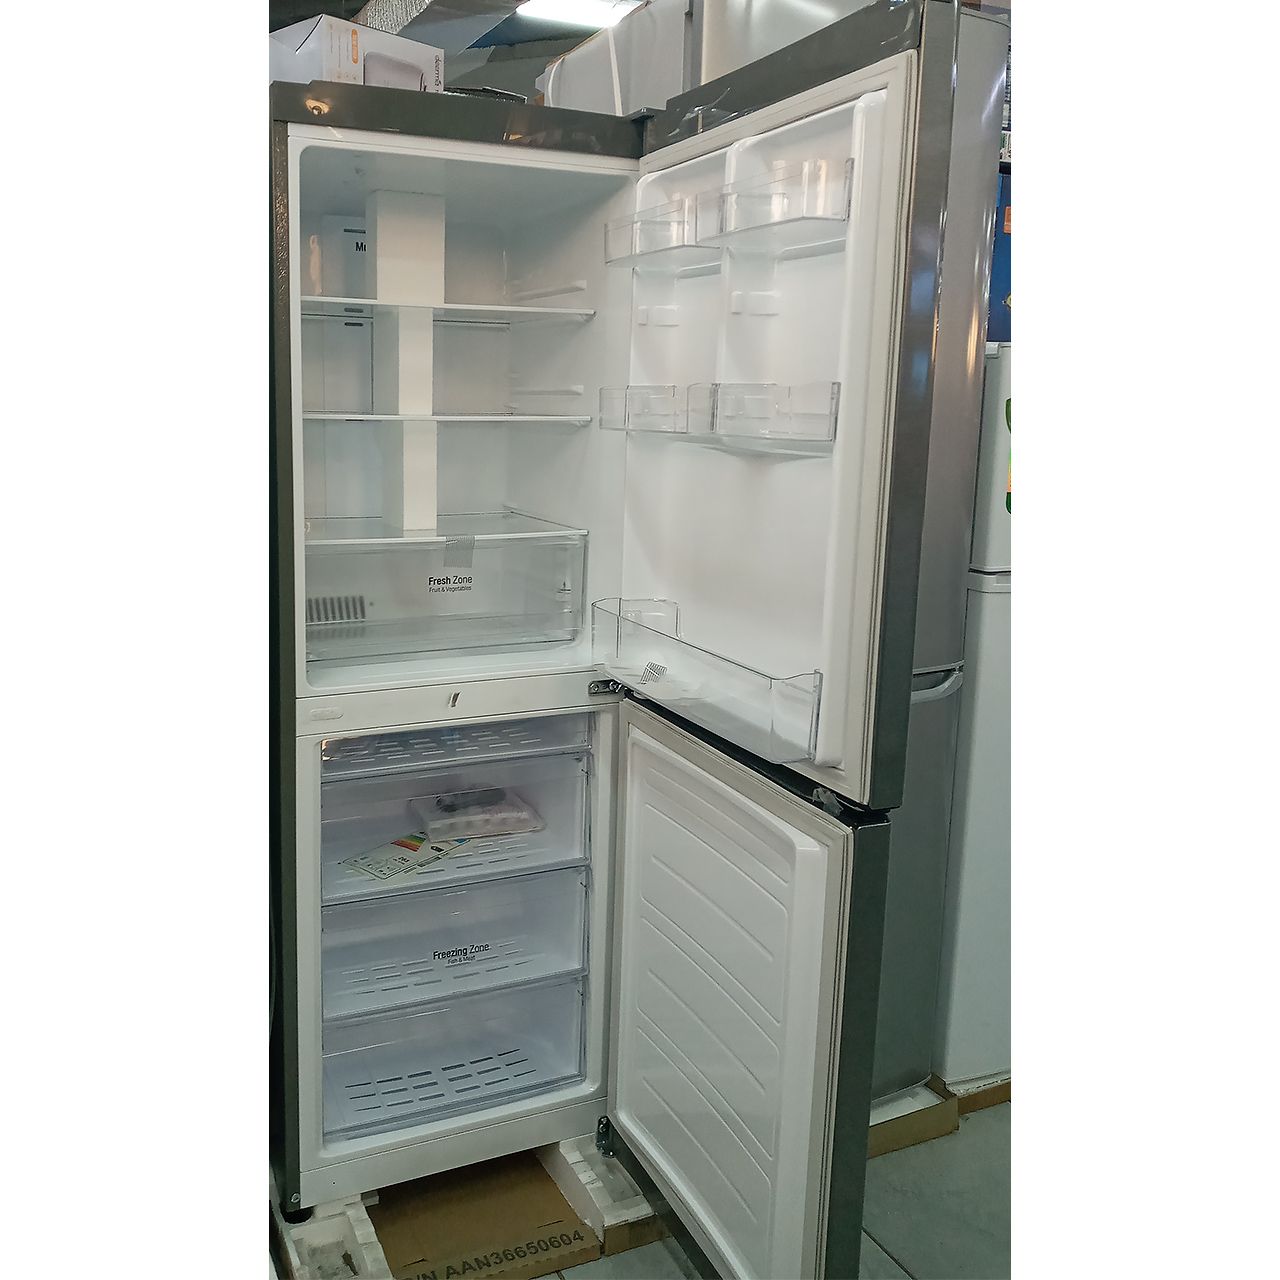 Холодильник двухкамерный LG 261 литр